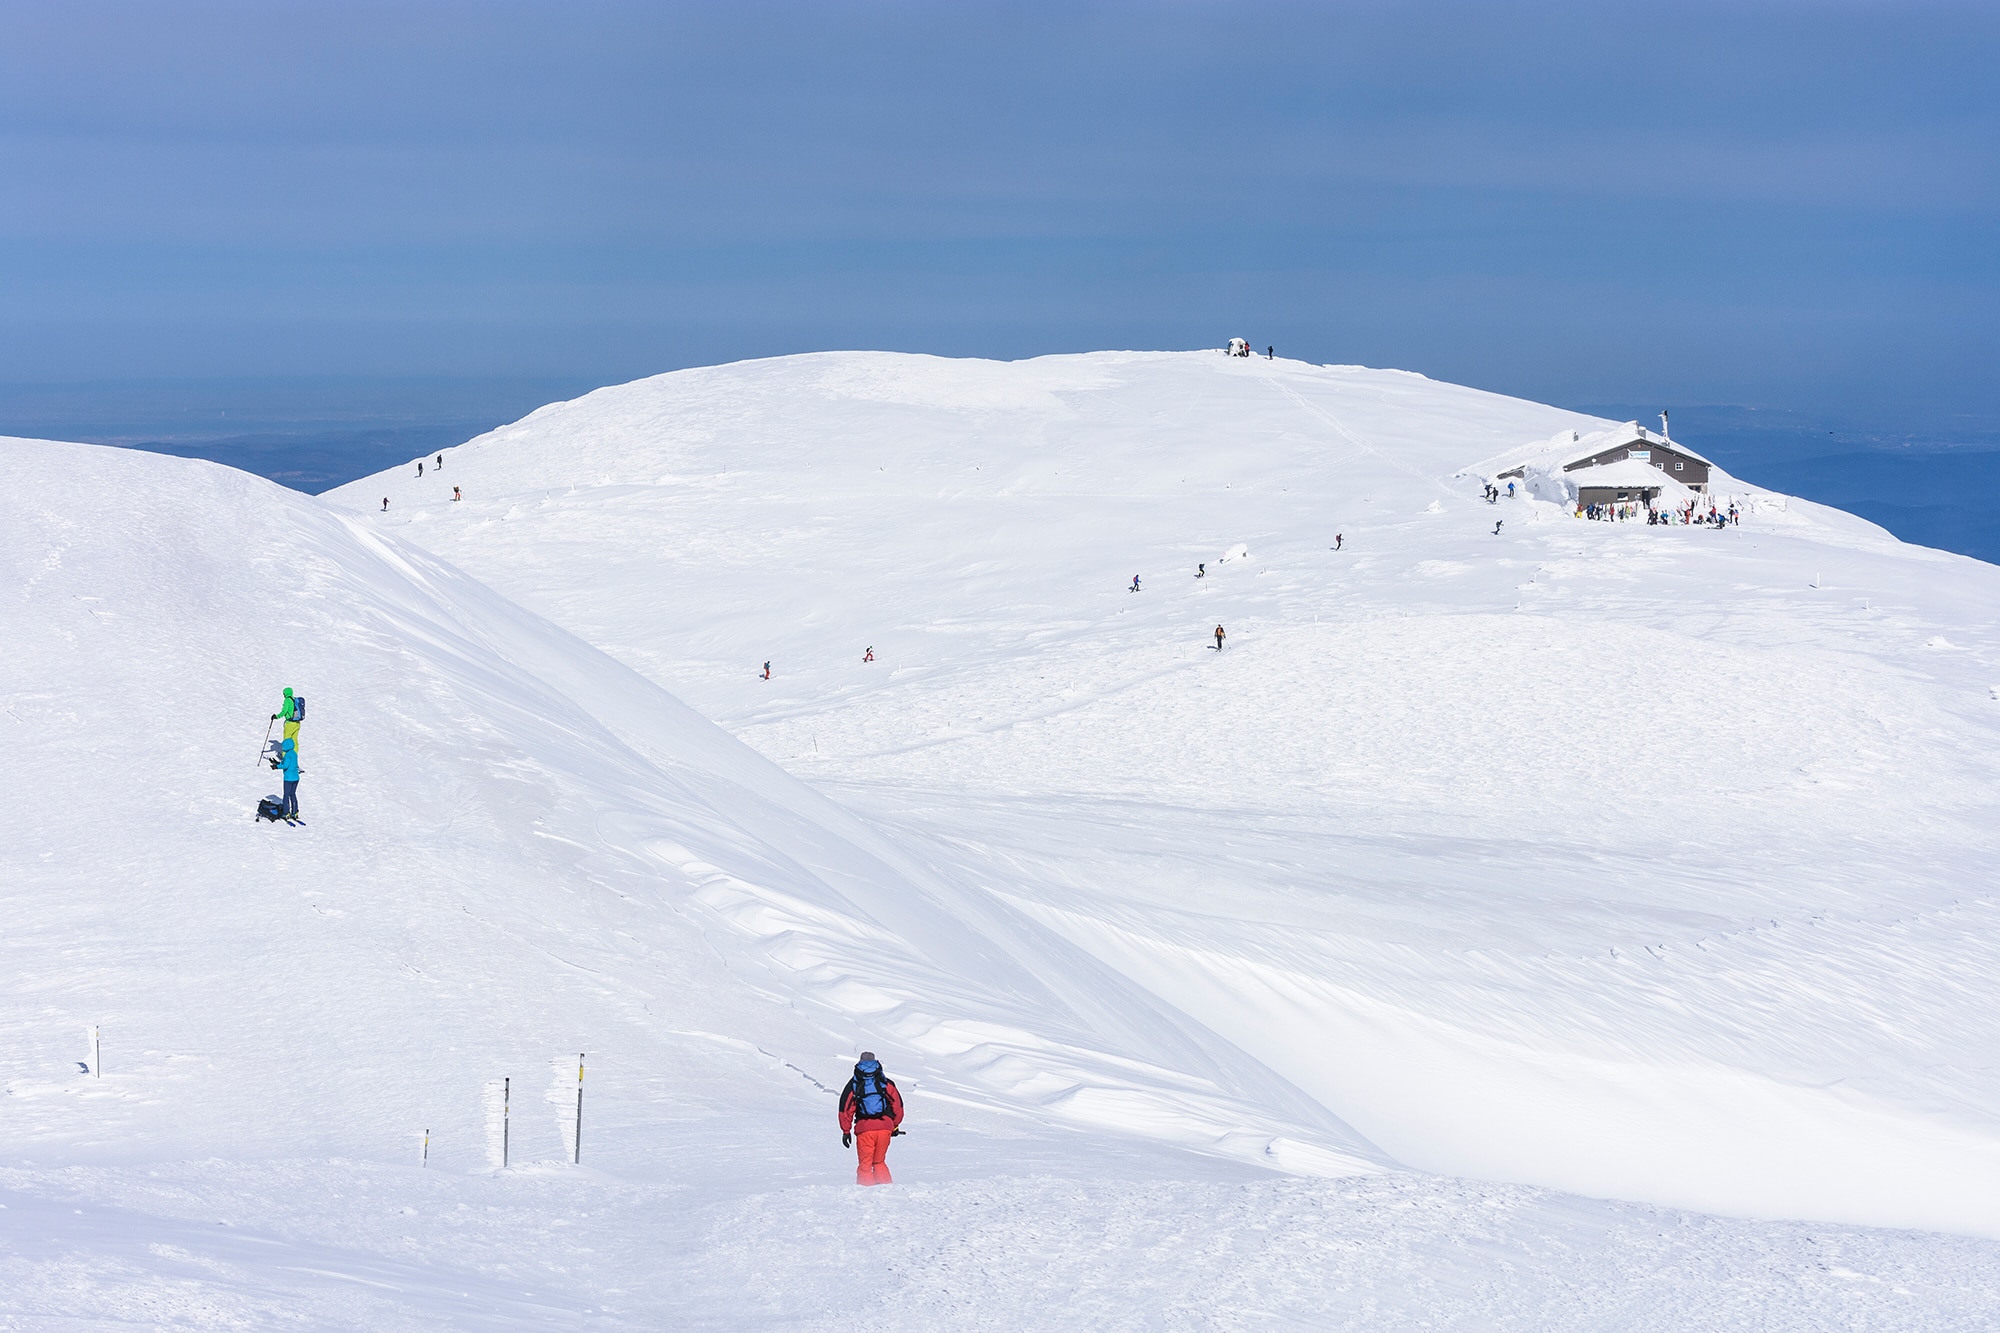 Das Gipfelplateau des Schneebergs im Winter mit der Fischerhütte